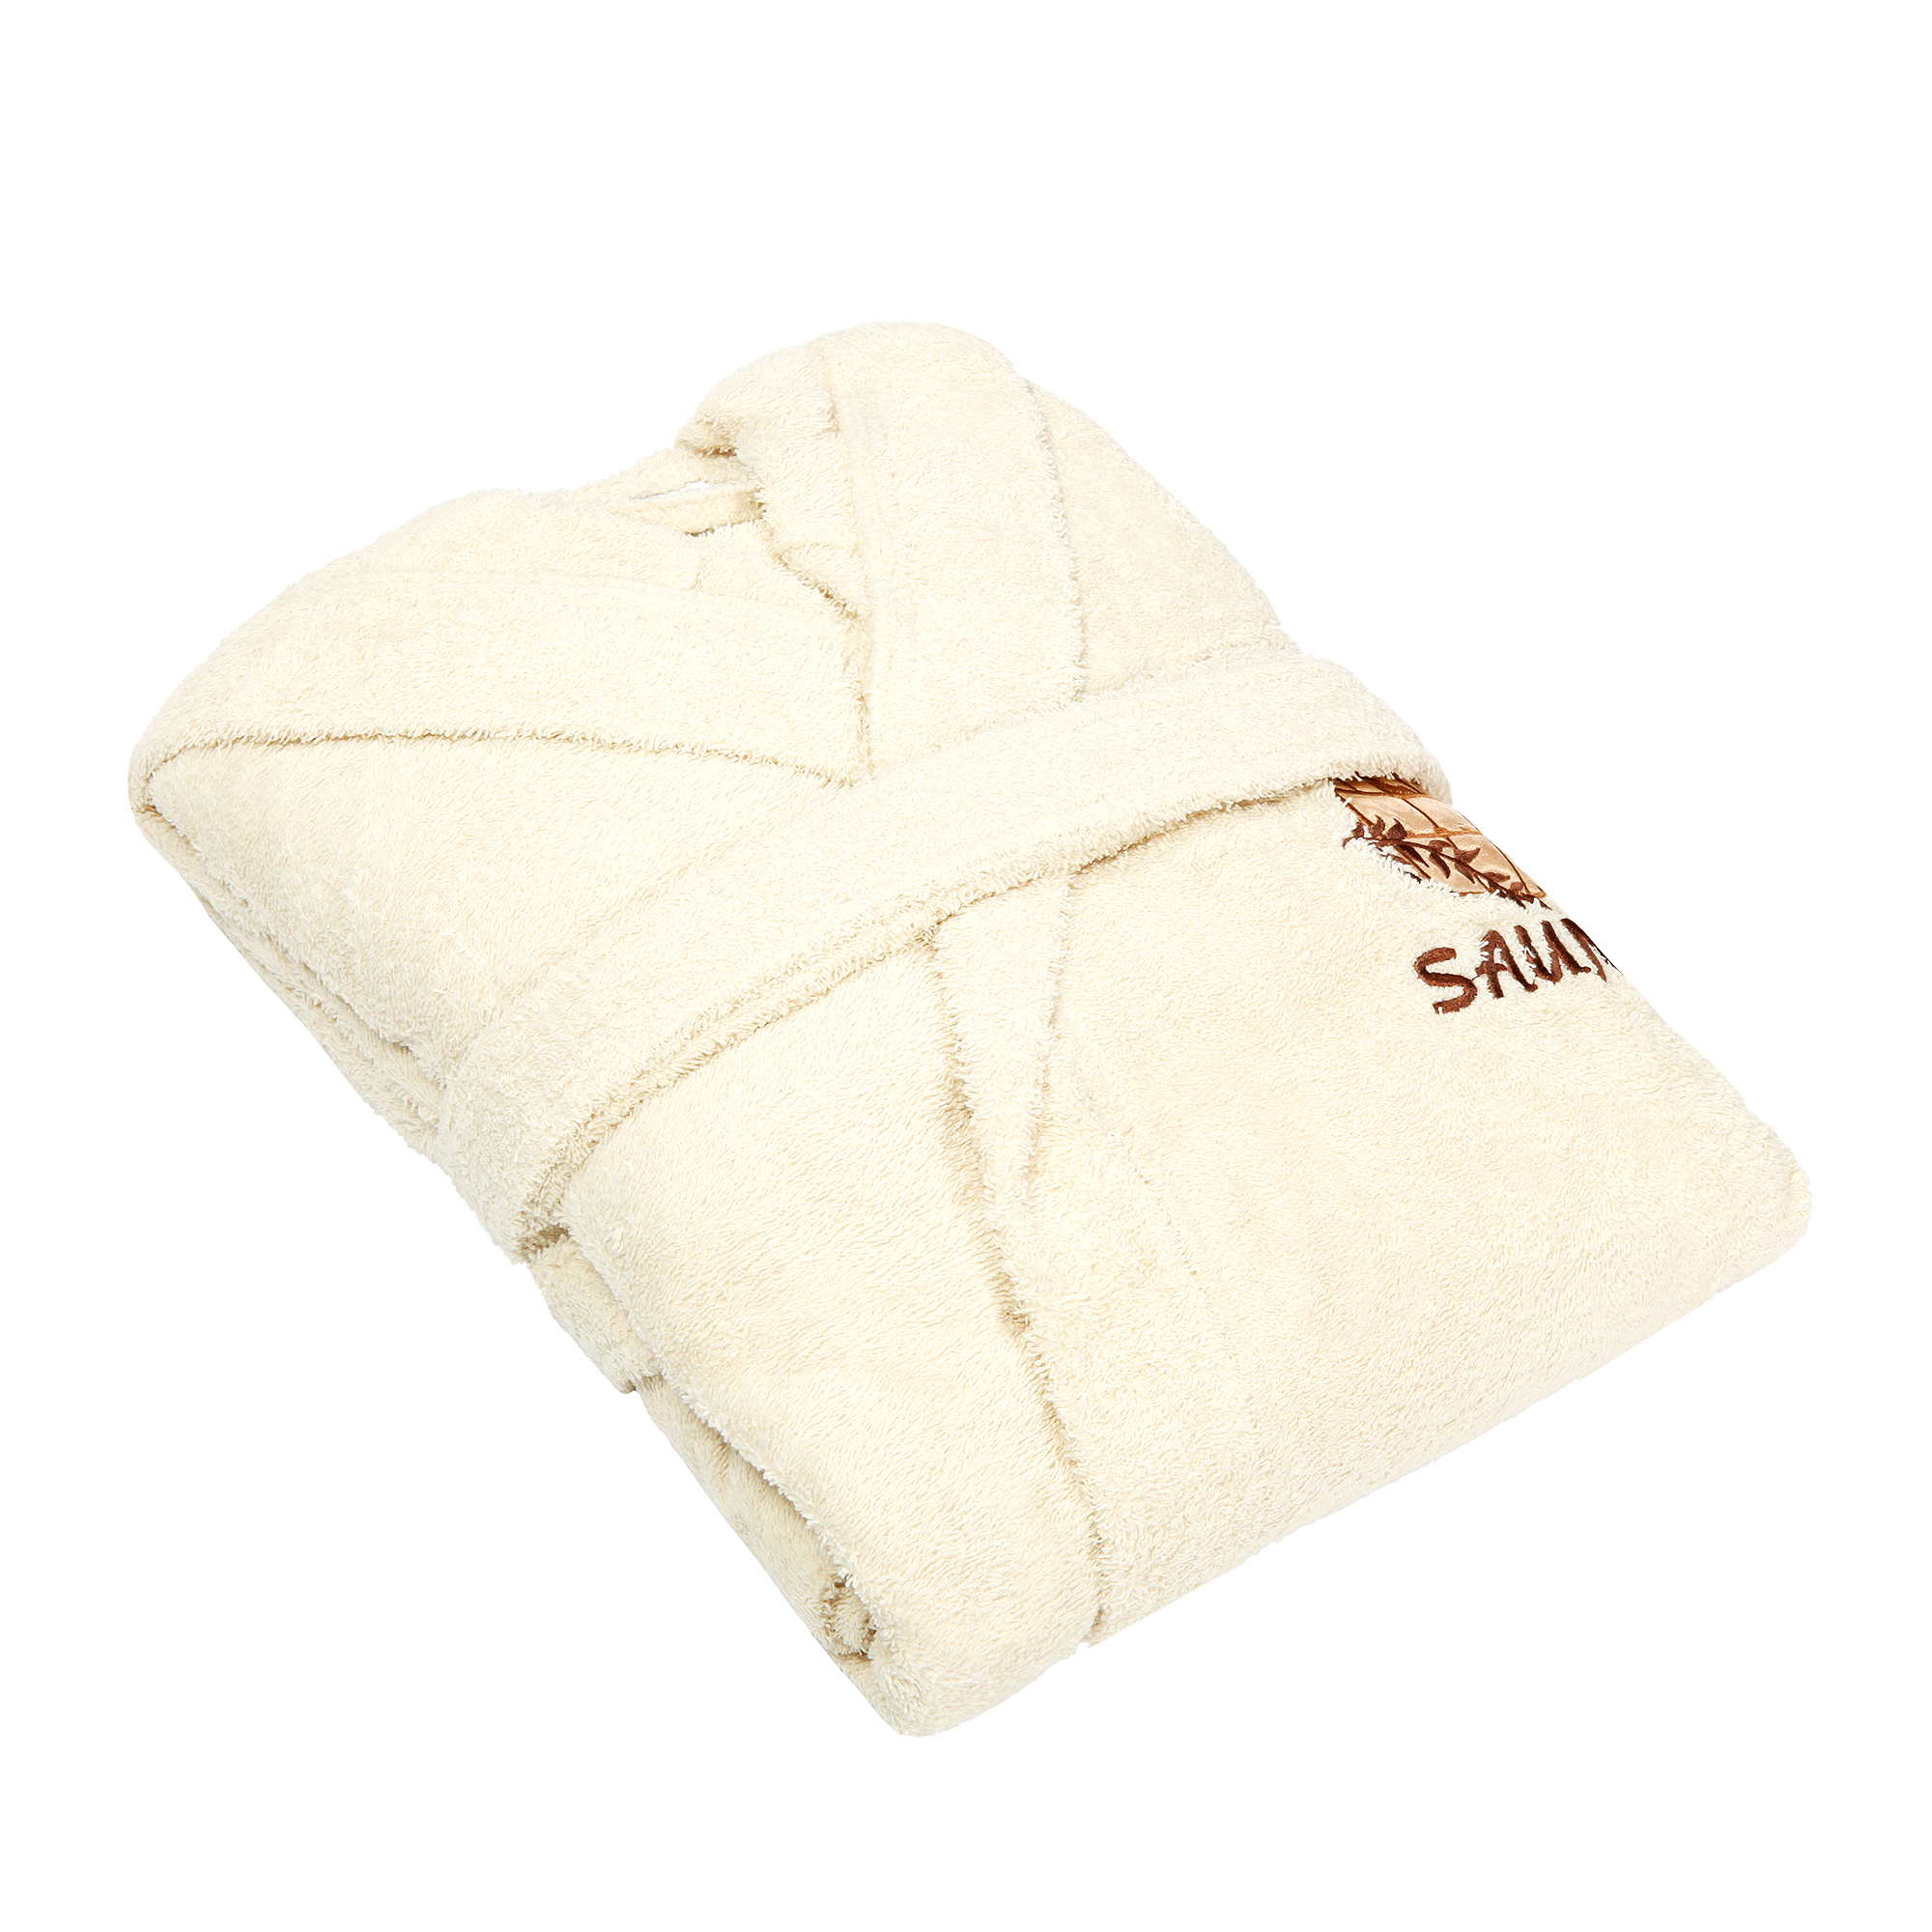 Халат махровый Asil Sauna с капюшоном XL 81025031 халат мужской asil sauna kimono brown xxl вафельный